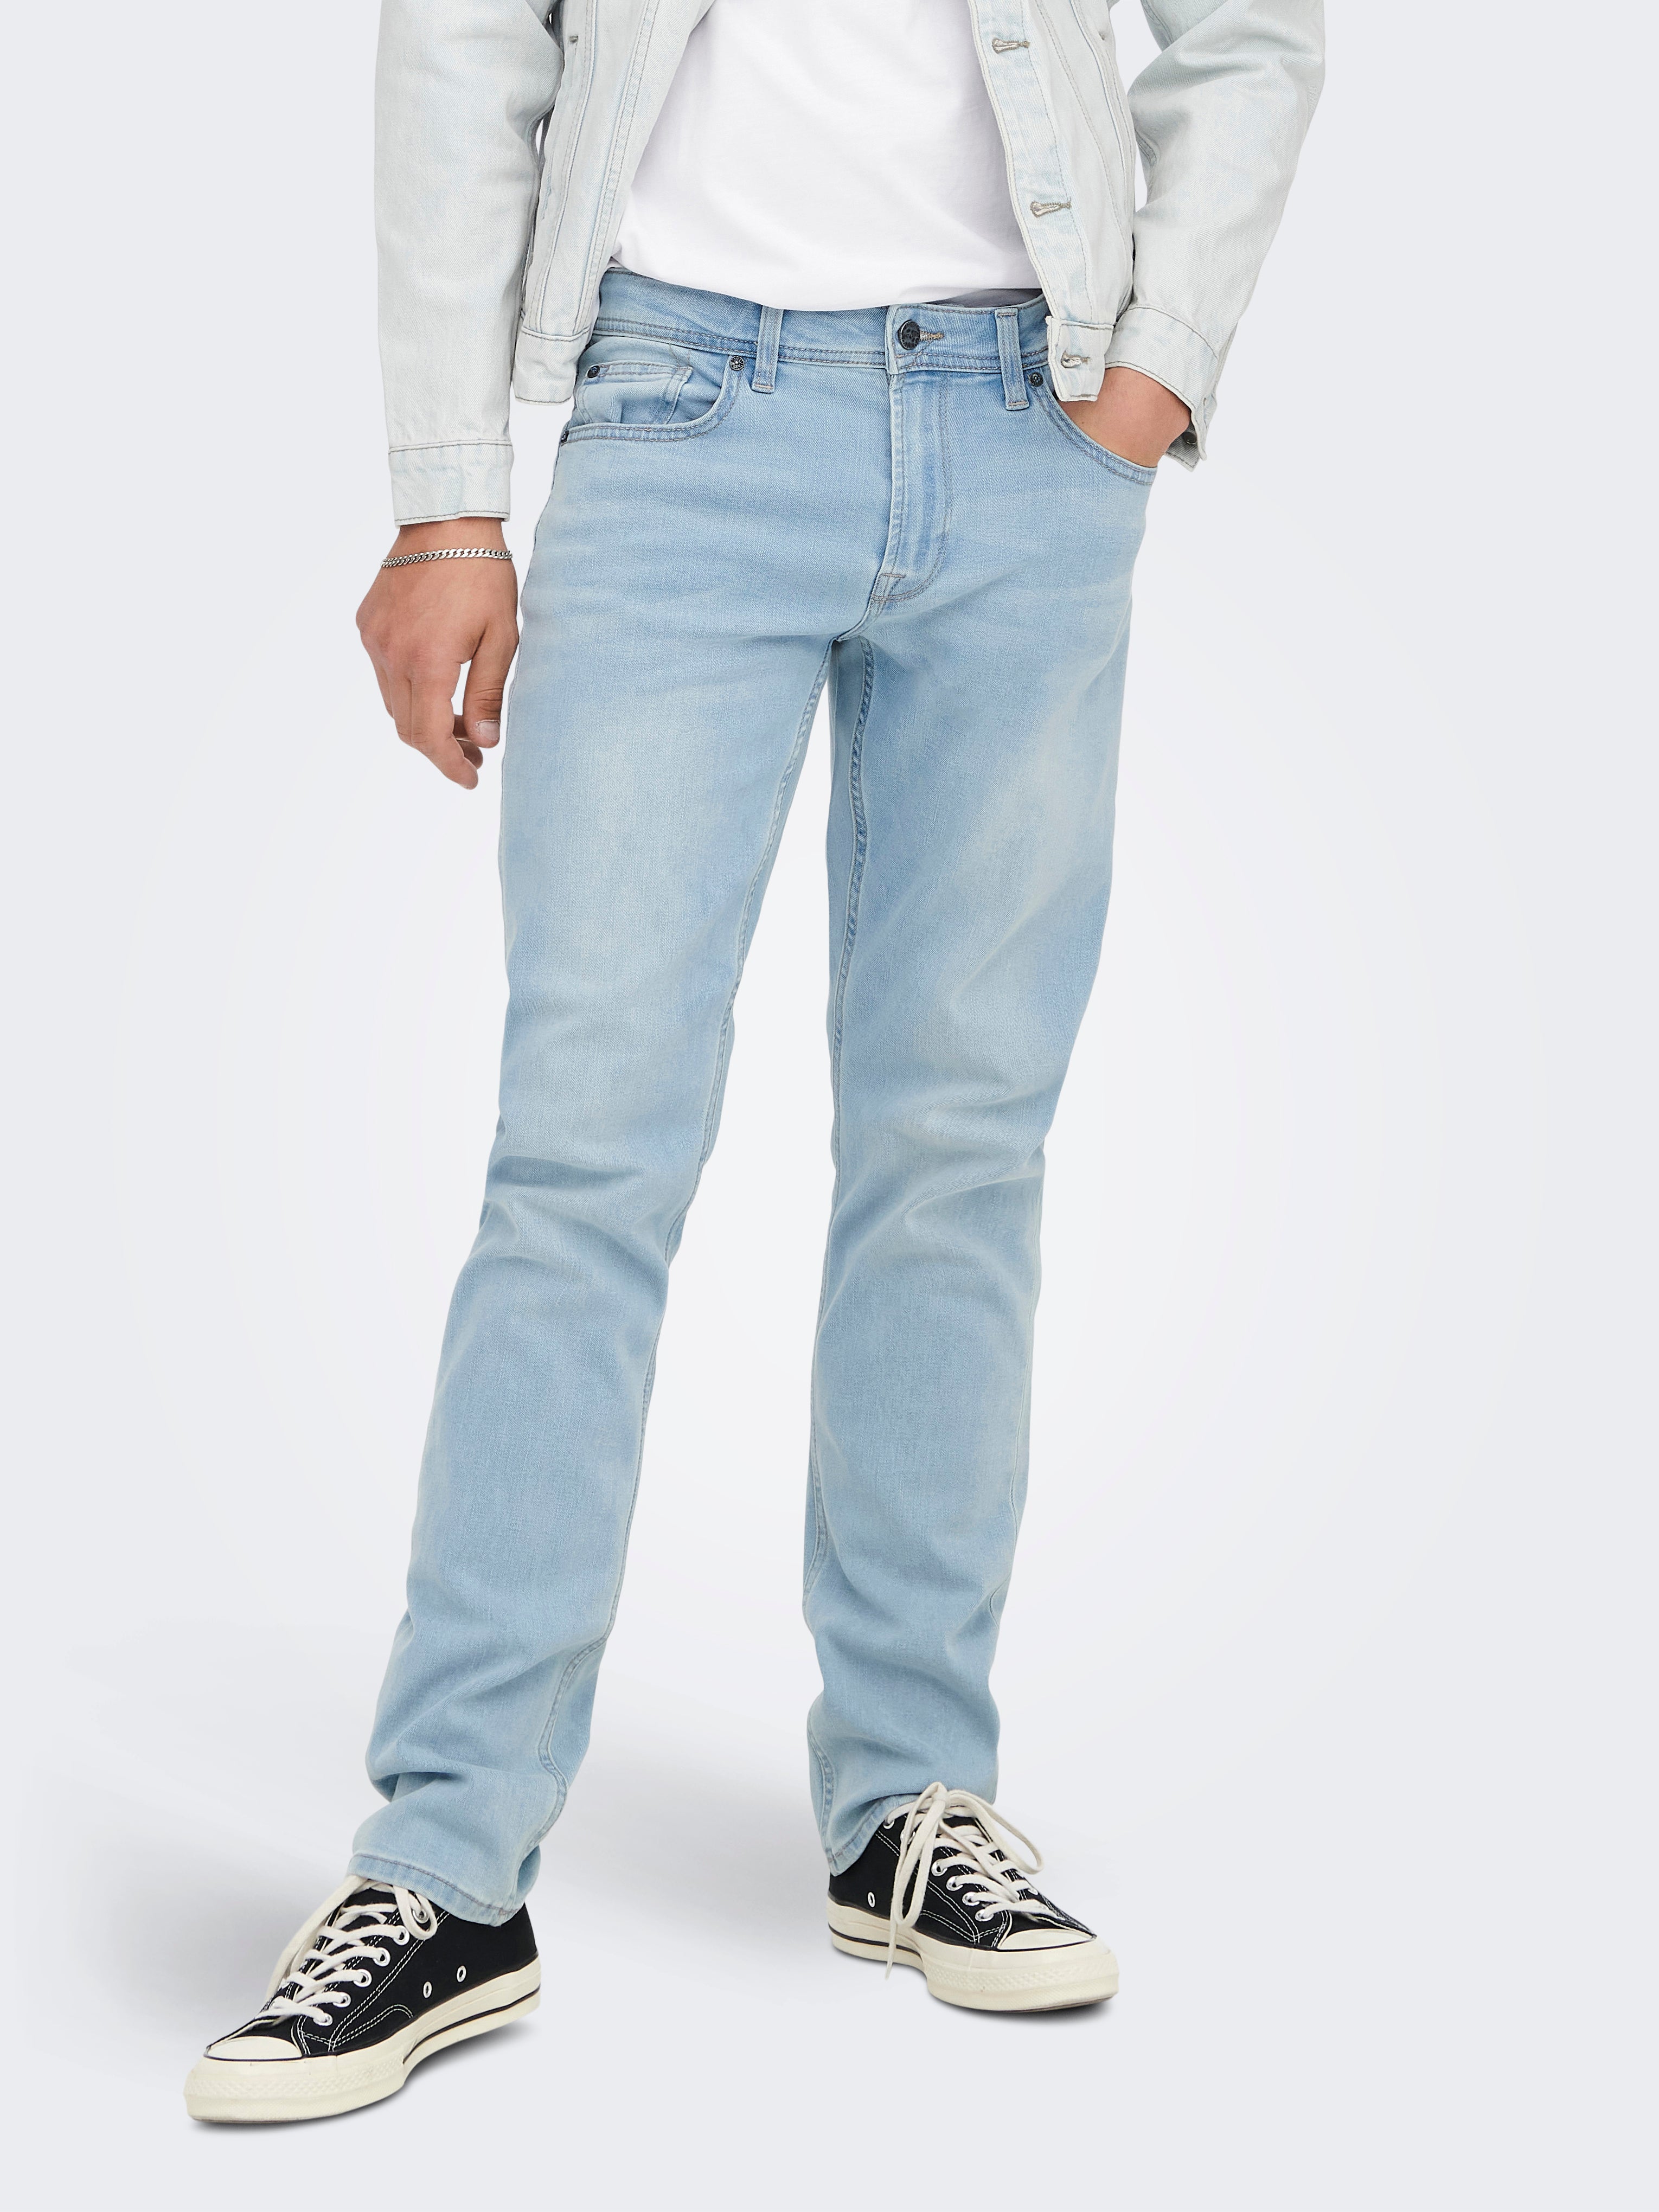 Buy Only Women's Skinny Jeans (15245316-Light Light Blue Denim_26/32) at  Amazon.in